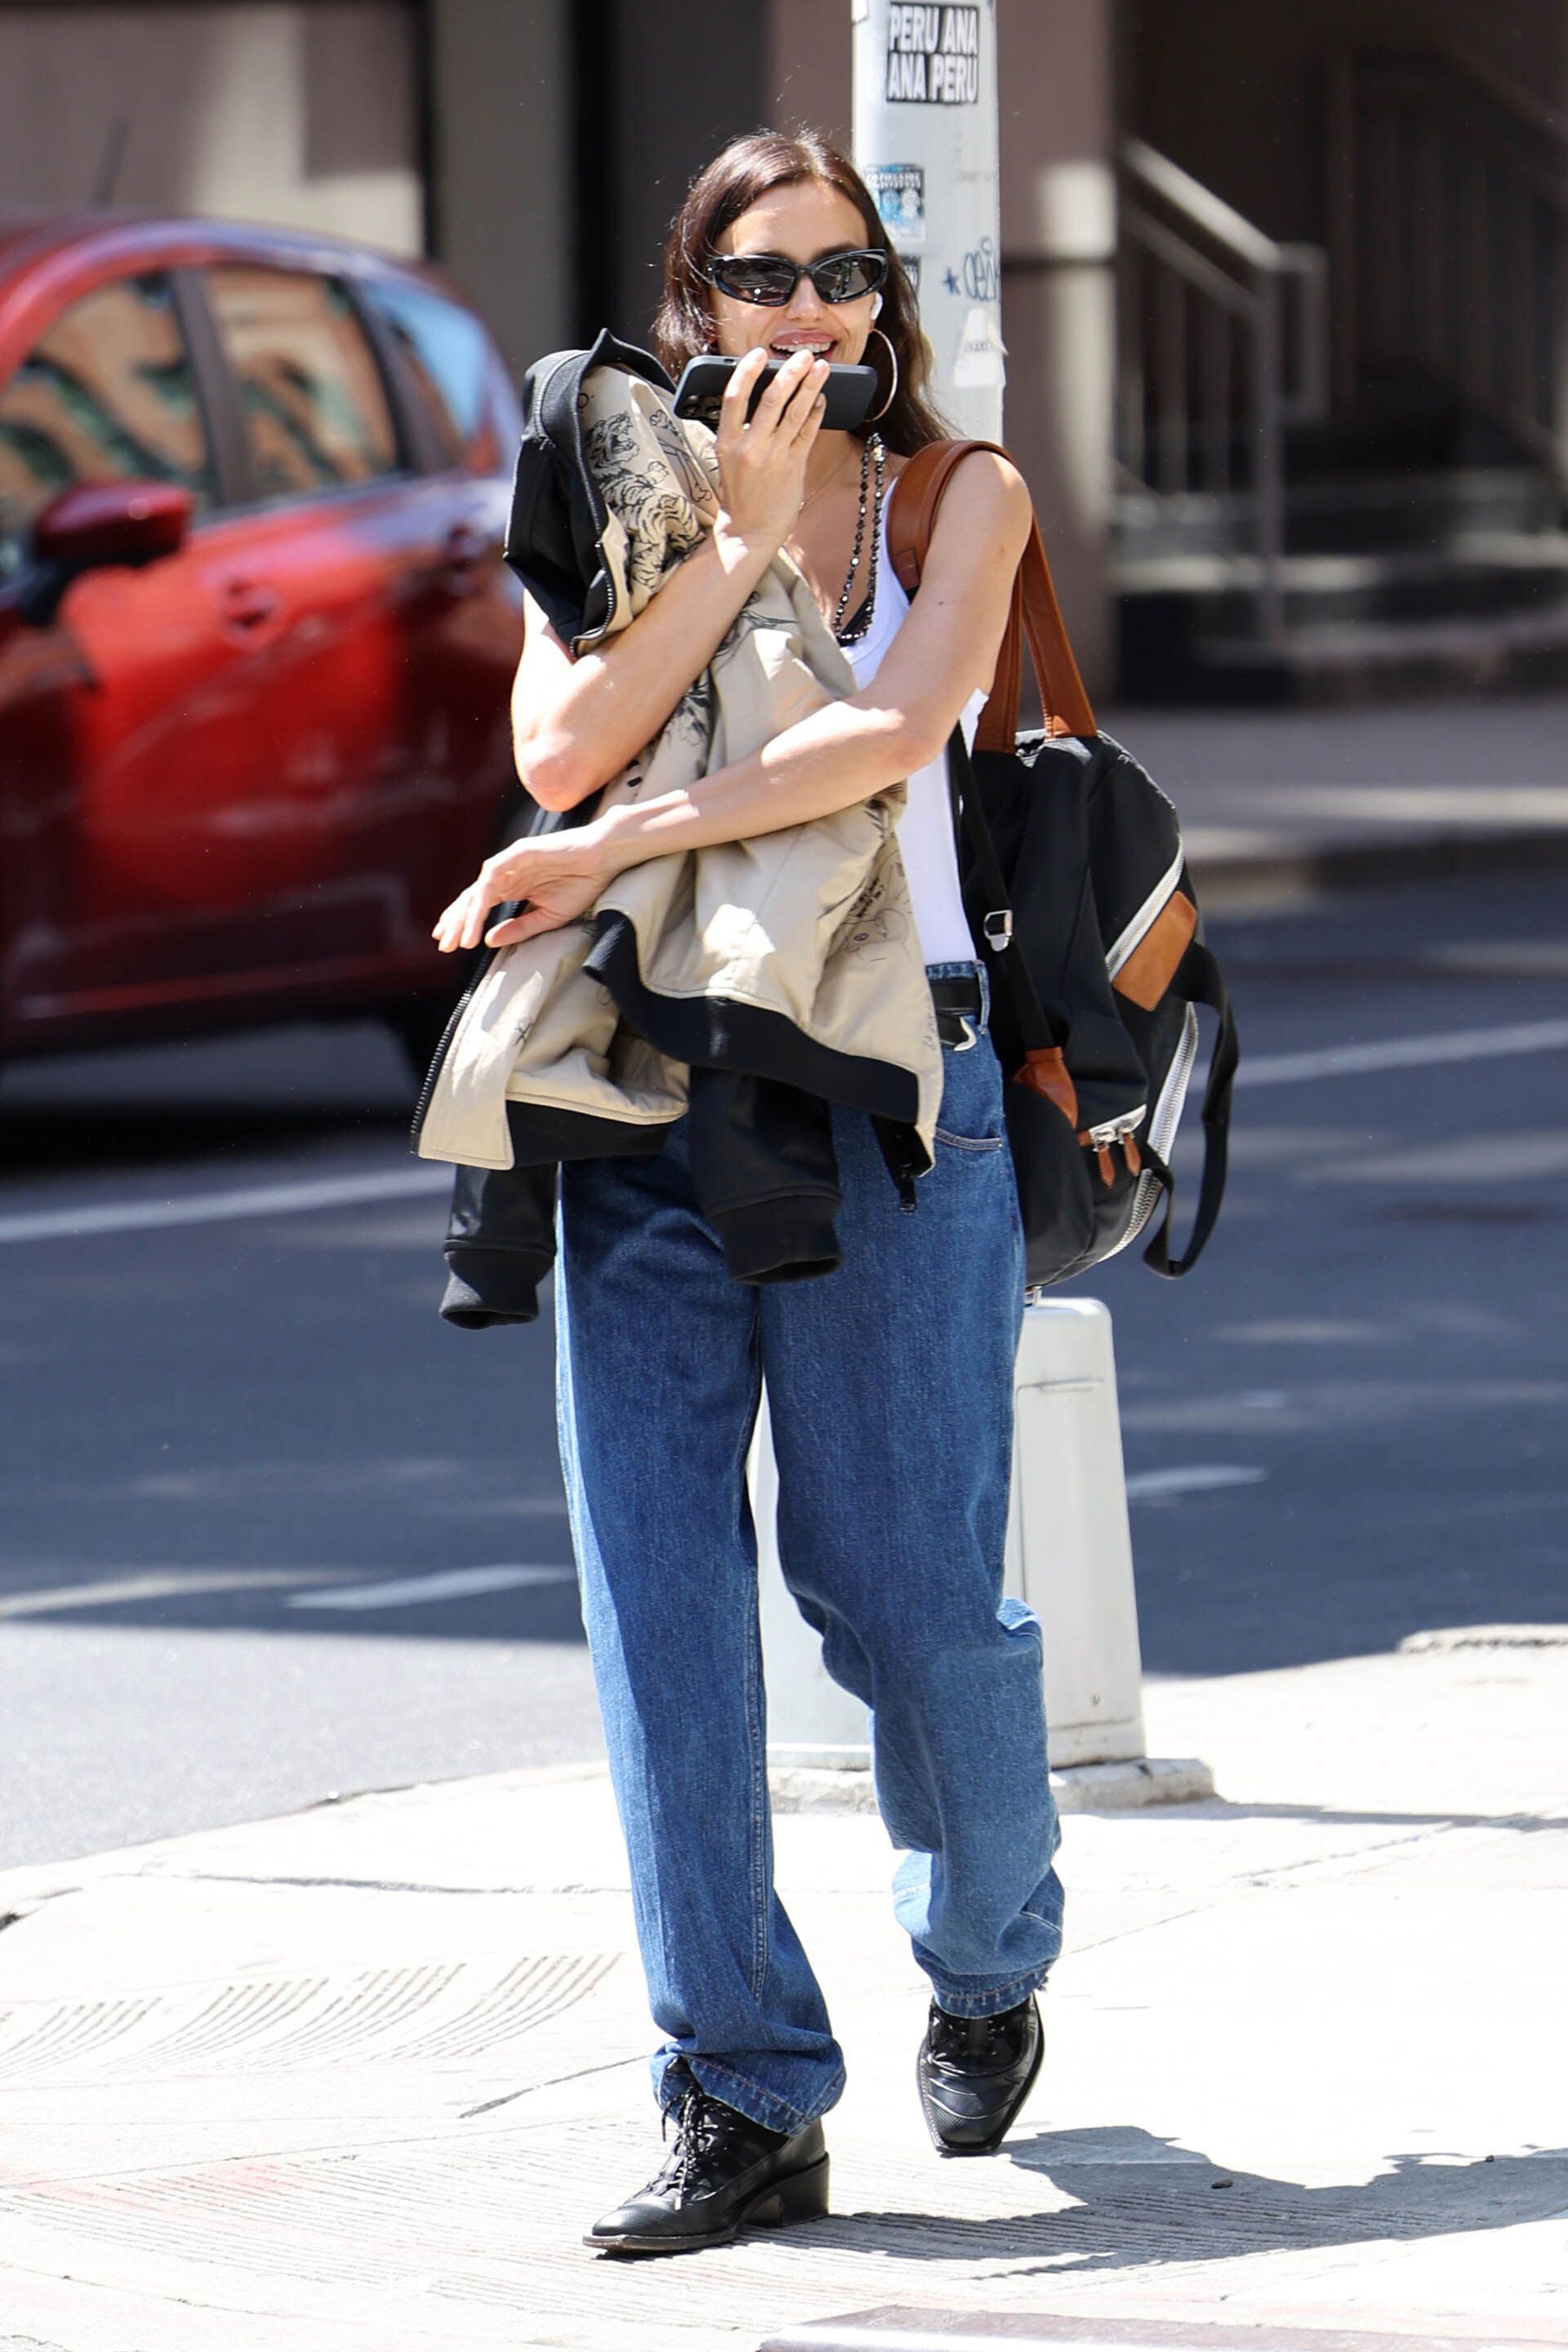 Irina Shayk compartió un almuerzo con una amiga en Nueva York. Para ello, lució un look casual trendy: musculosa blanca, pantalón de jean, borcegos estilo texanos con cordones, y cargó una campera negra y una mochila (The Grosby Group)